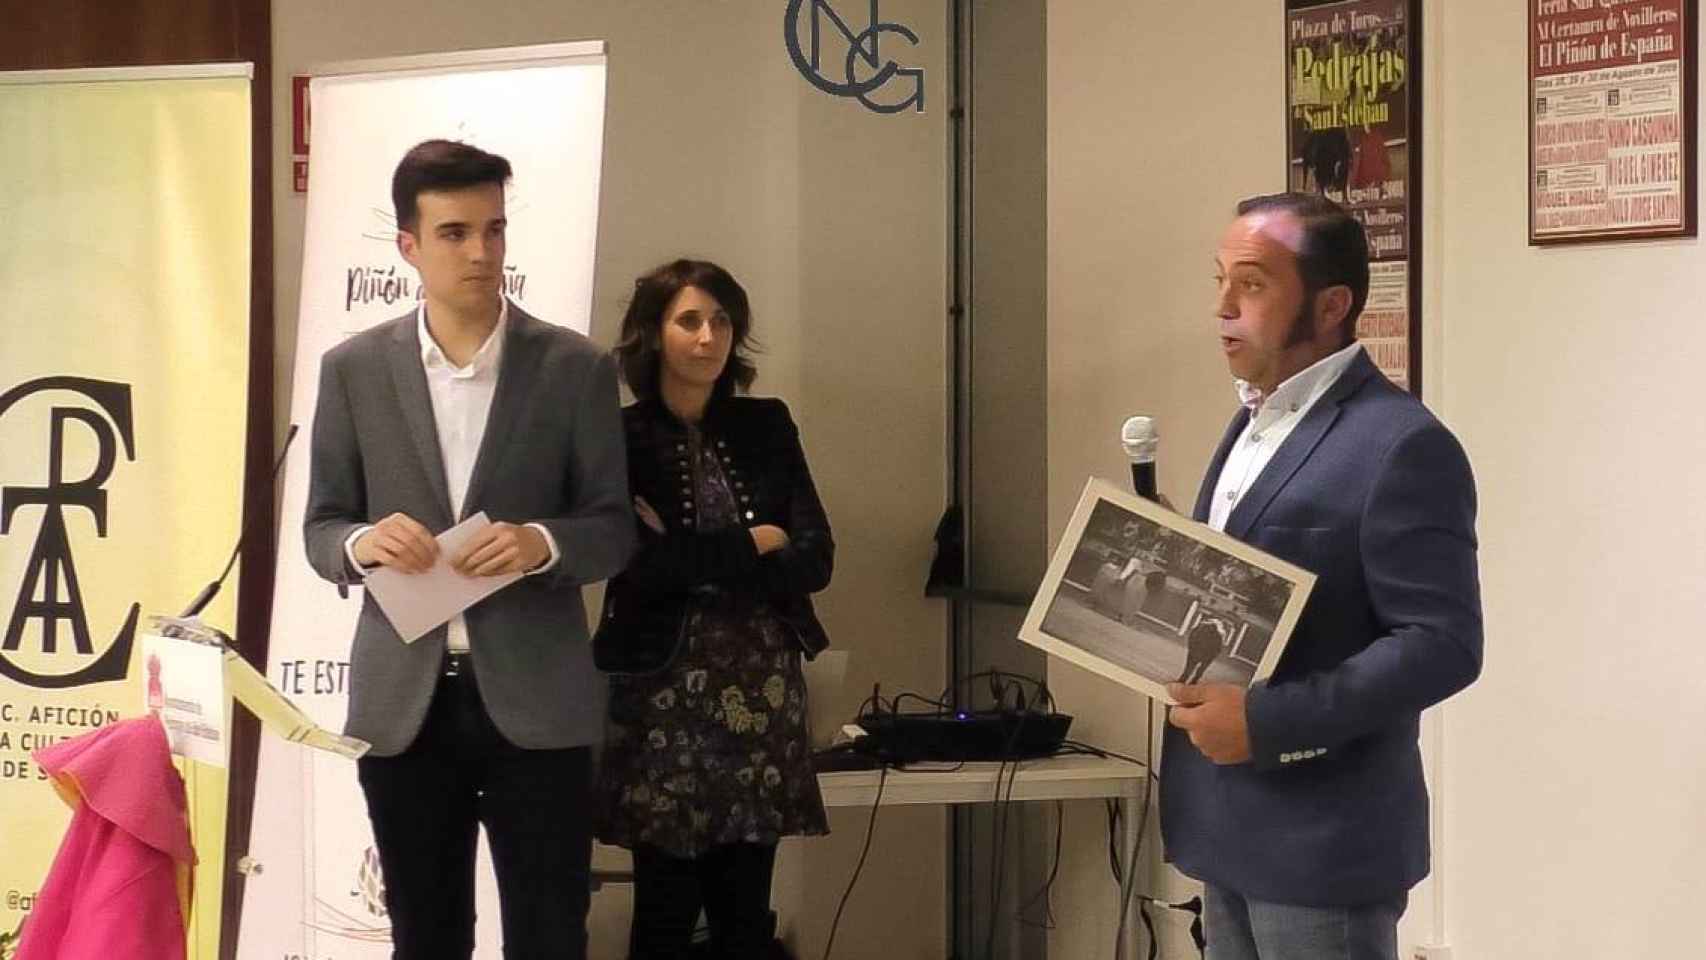 Premios de la XXII edición del Piñón de España en Pedrajas